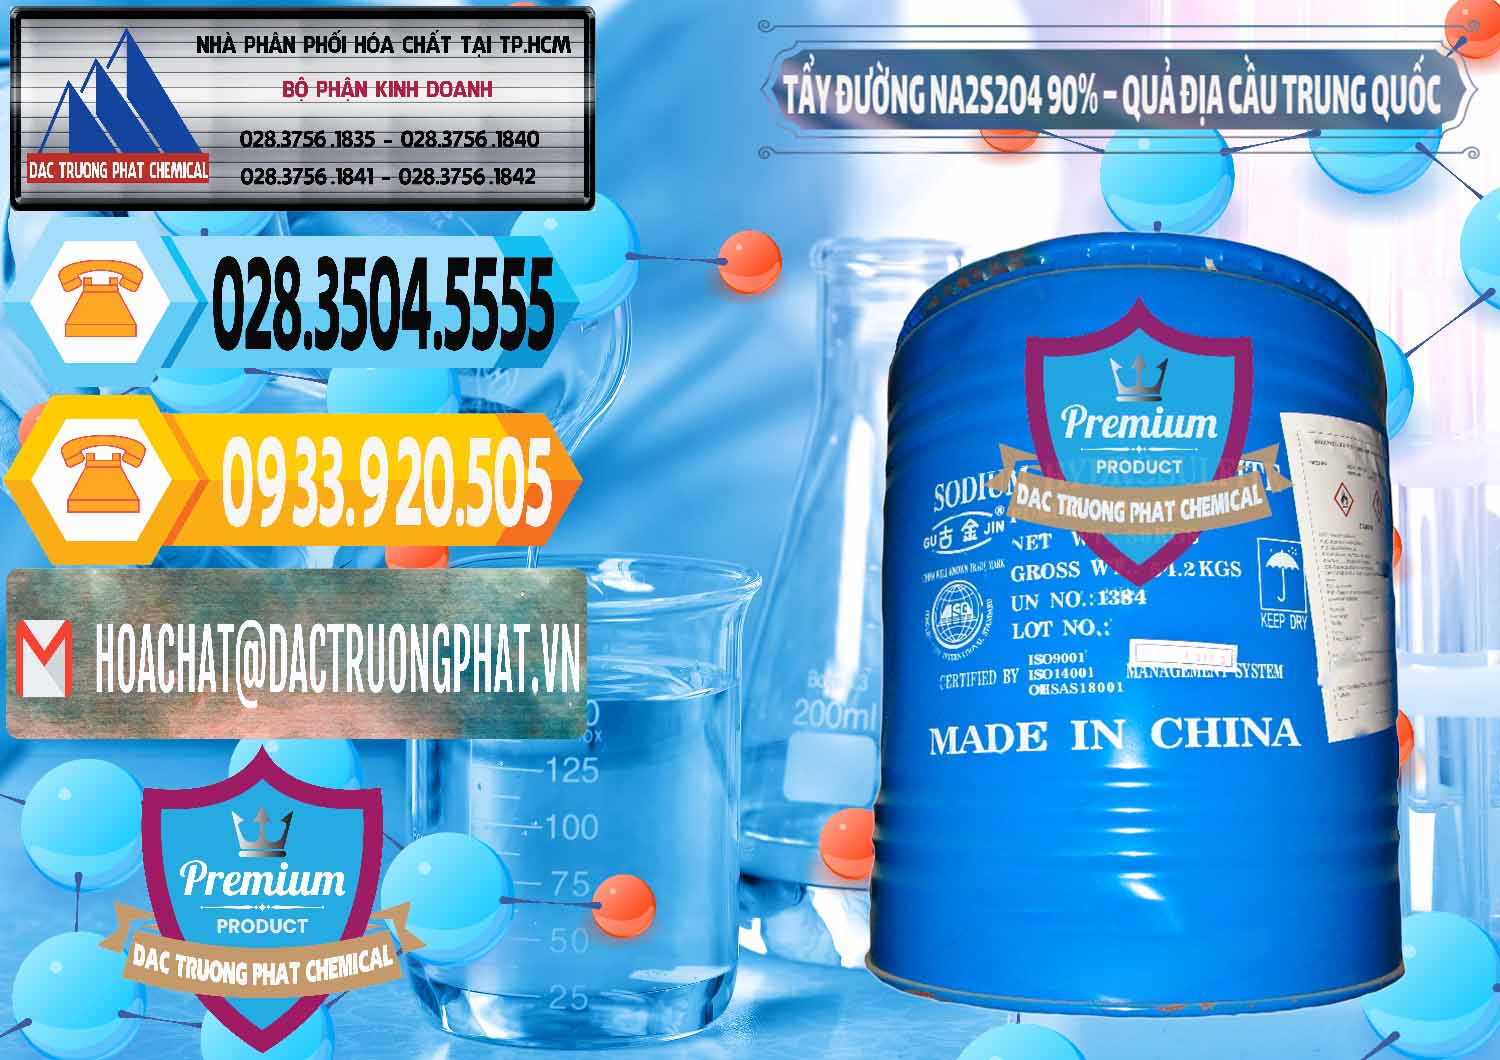 Nơi chuyên cung cấp & bán Tẩy Đường - NA2S2O4 Logo Quả Địa Cầu Trung Quốc China - 0159 - Chuyên bán & cung cấp hóa chất tại TP.HCM - hoachattayrua.net